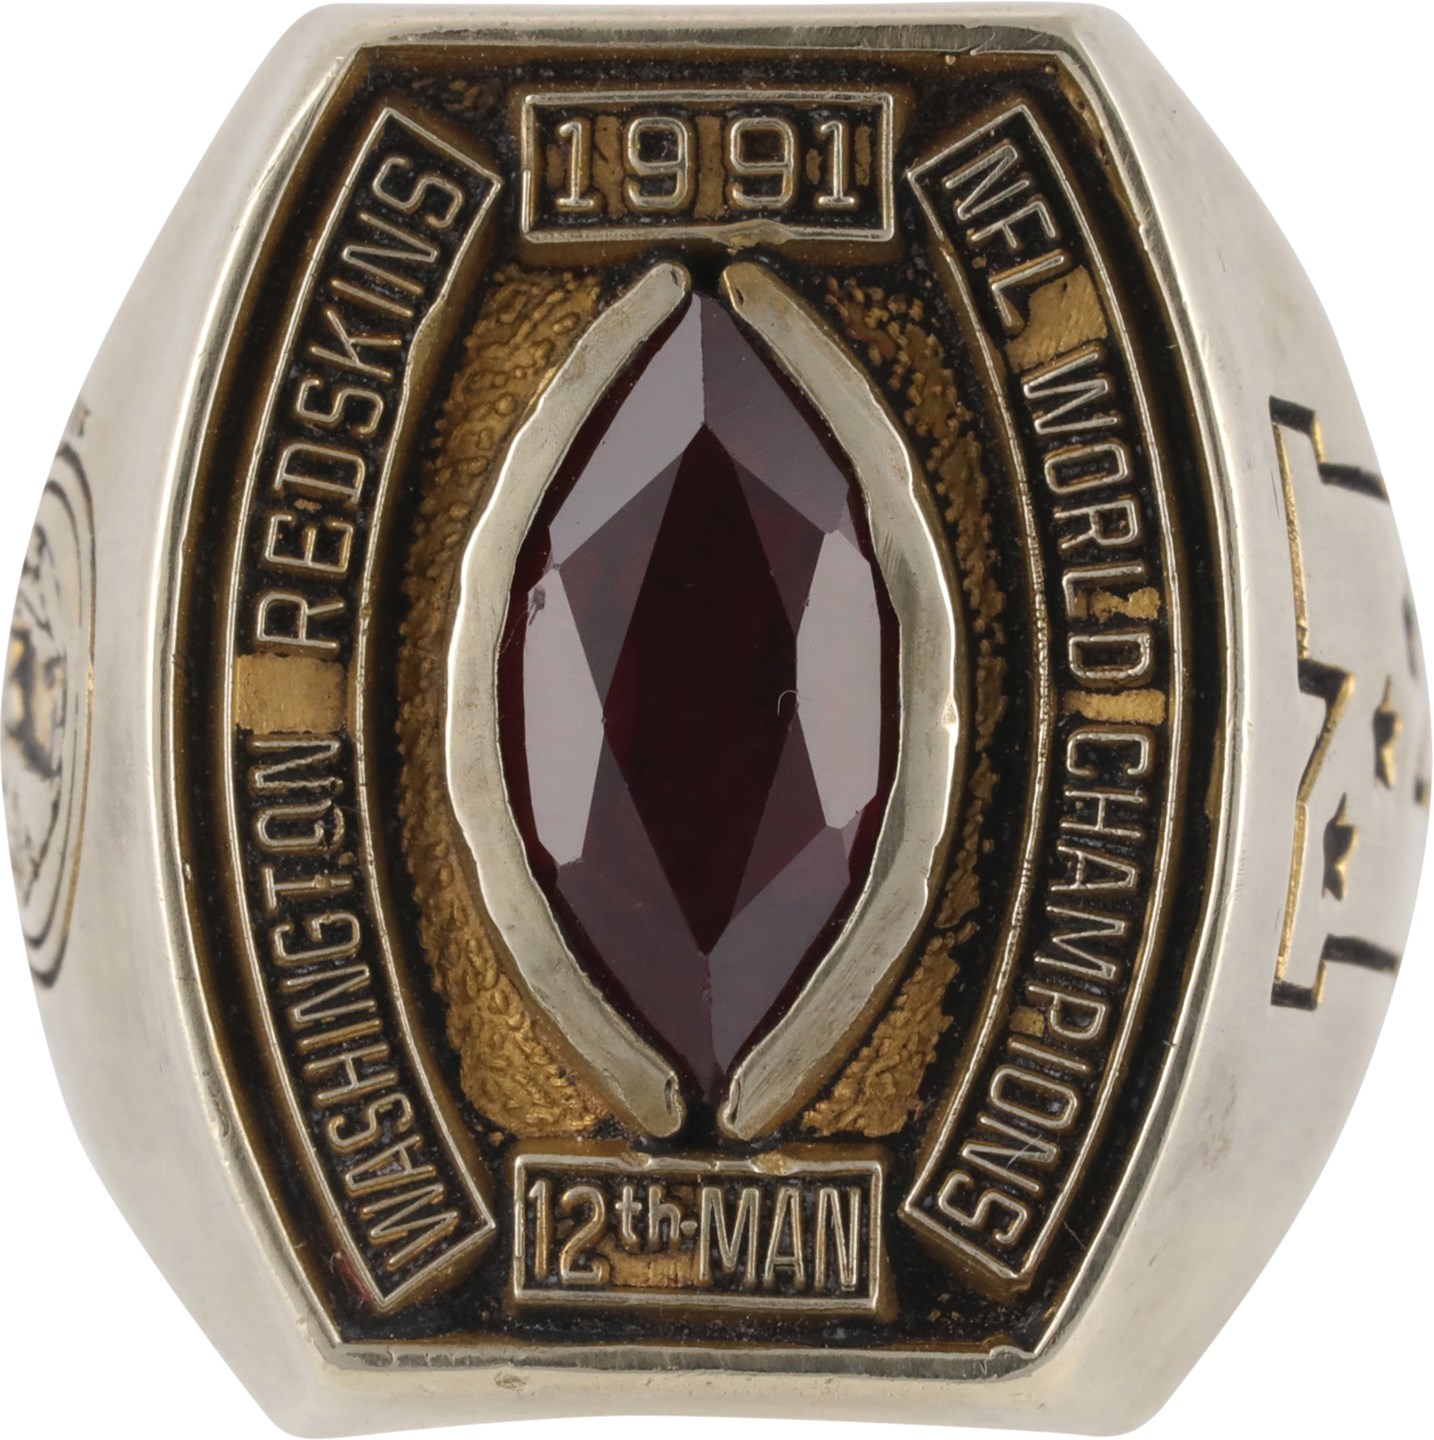 - 1991 Washington Redskins "12th Man" Championship Ring